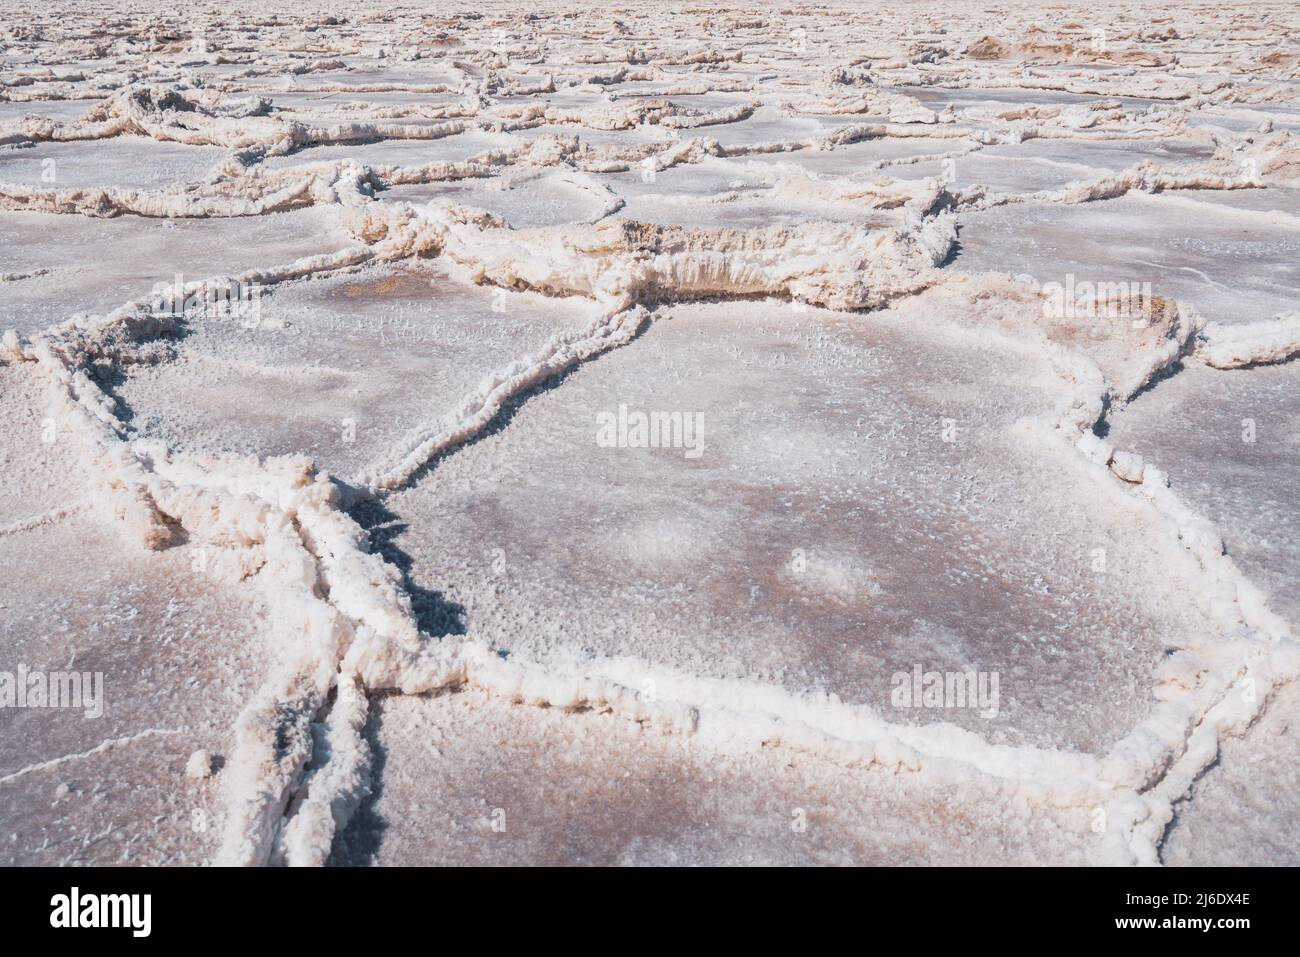 Des salées, des plaques de sel ont été réagrées sous le niveau de la mer dans le parc national de la Vallée de la mort. Gros plan sur la texture. Badwater Basin, célèbre destination touristique Banque D'Images